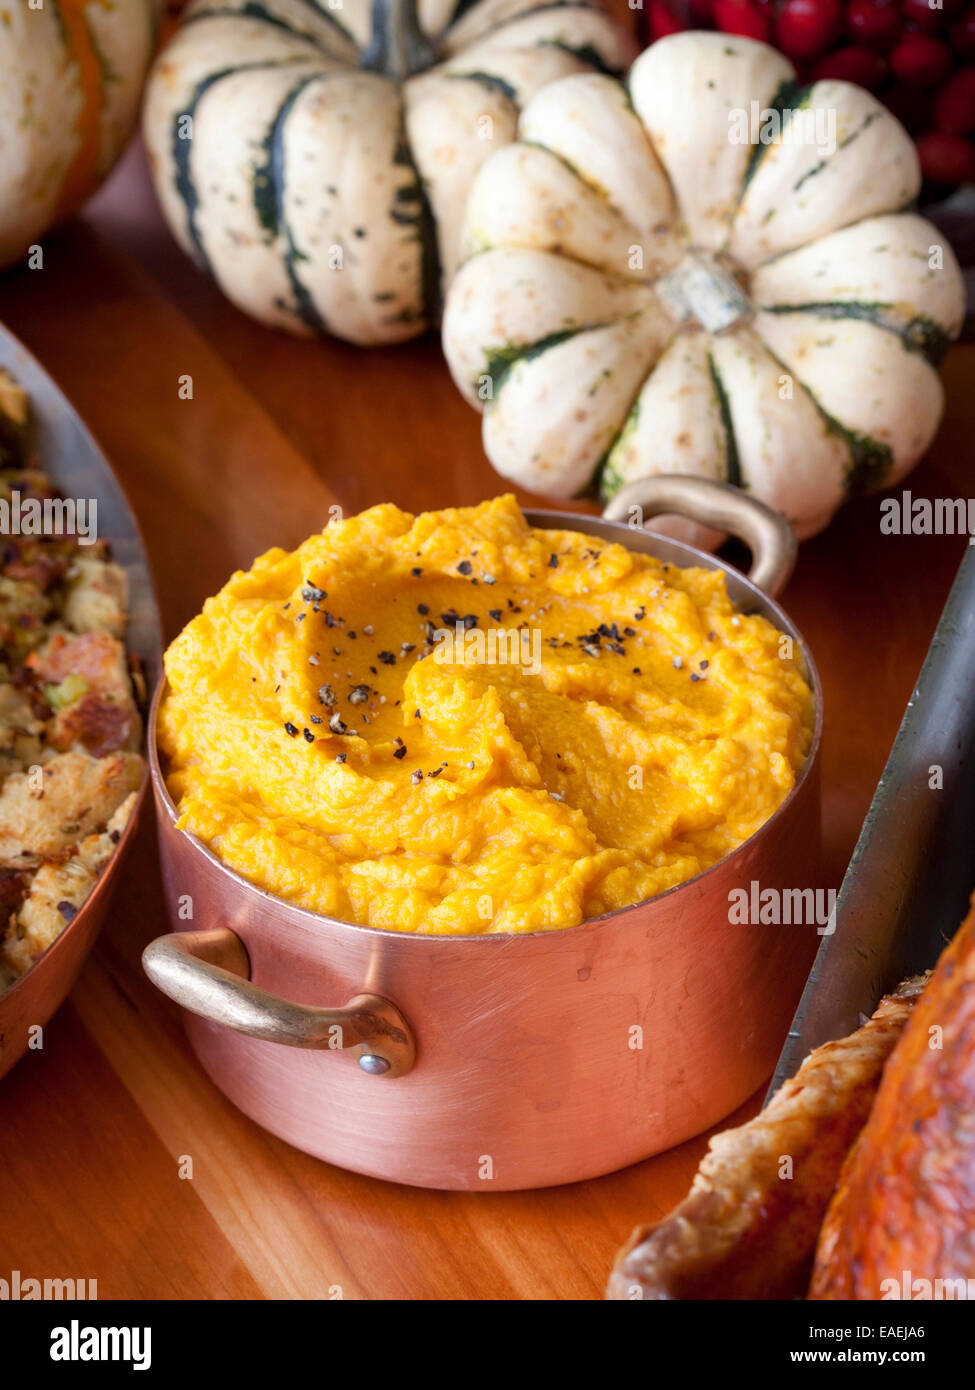 07.11.2013, bereitet New York, NY-Chef Tom Colicchio ein Thanksgiving-Essen, einschließlich Süßkartoffeln, bei seinem Restaurant Kraft. Stockfoto